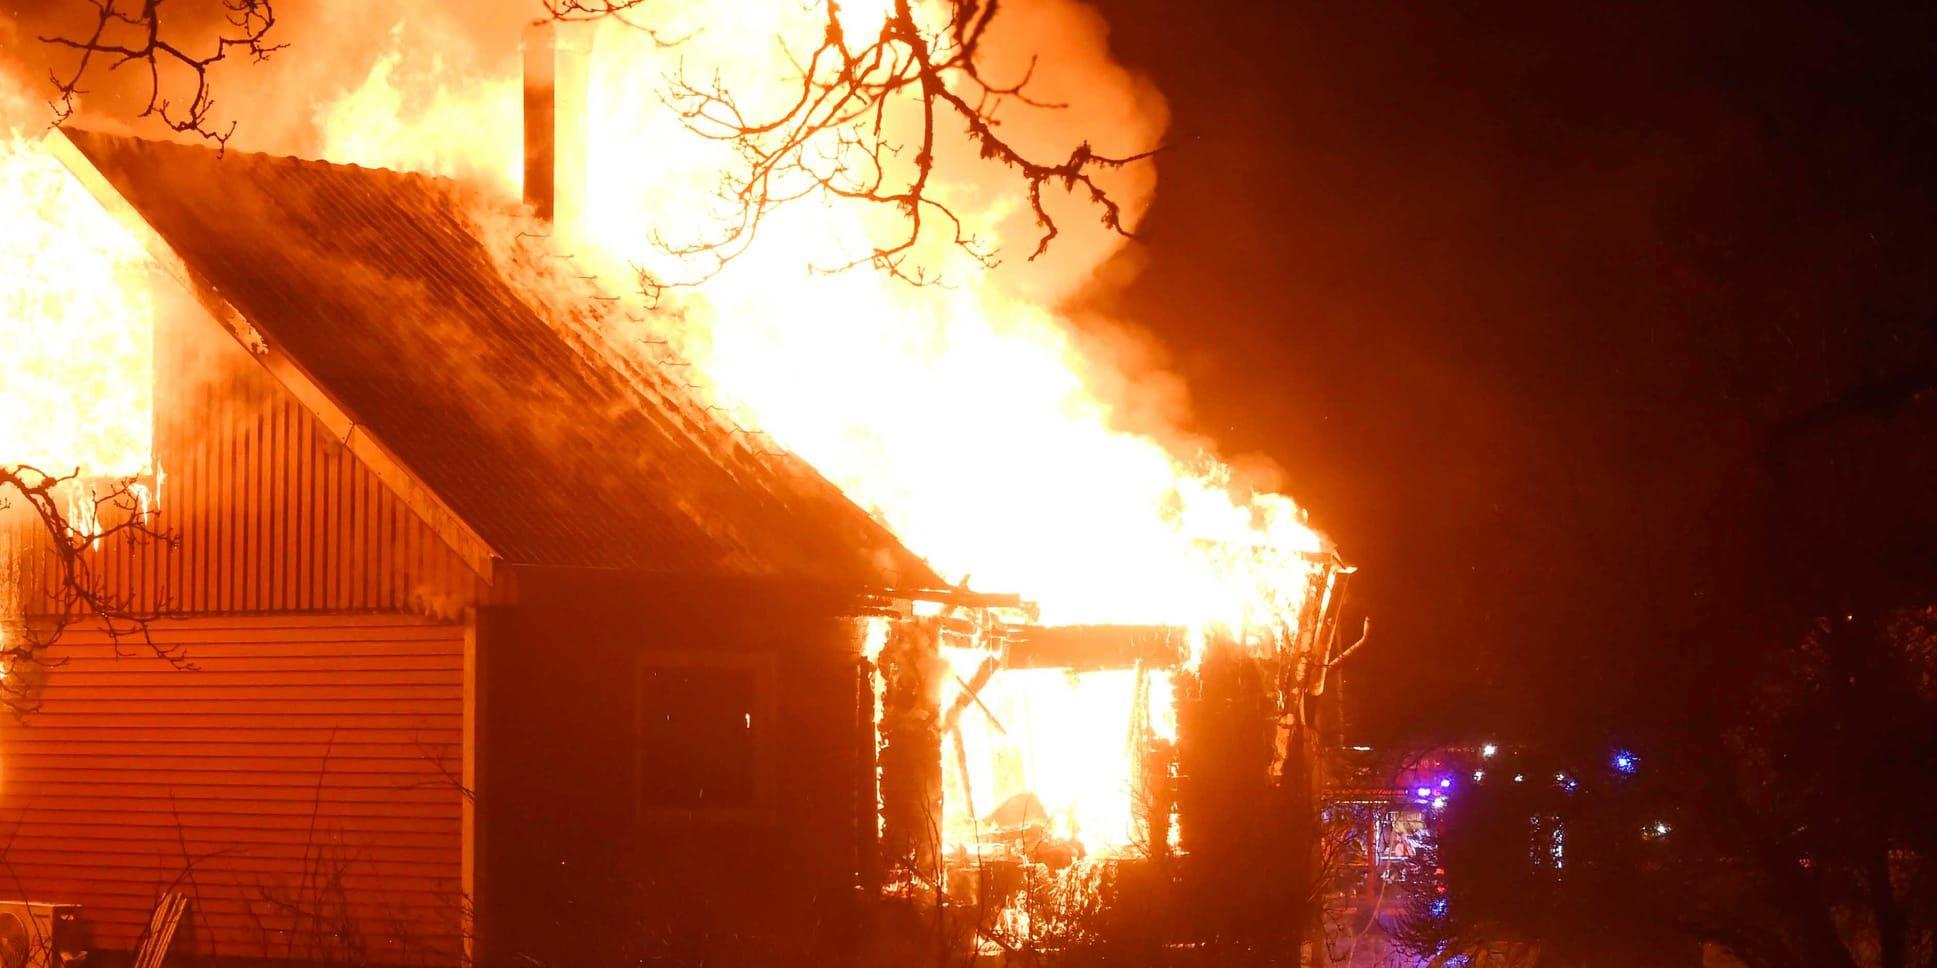 En brand utbröt i en villa i Marks kommun under nyårsnatten. Villan var helt övertänd och skadades kraftigt. Bild: Joakim Eriksson